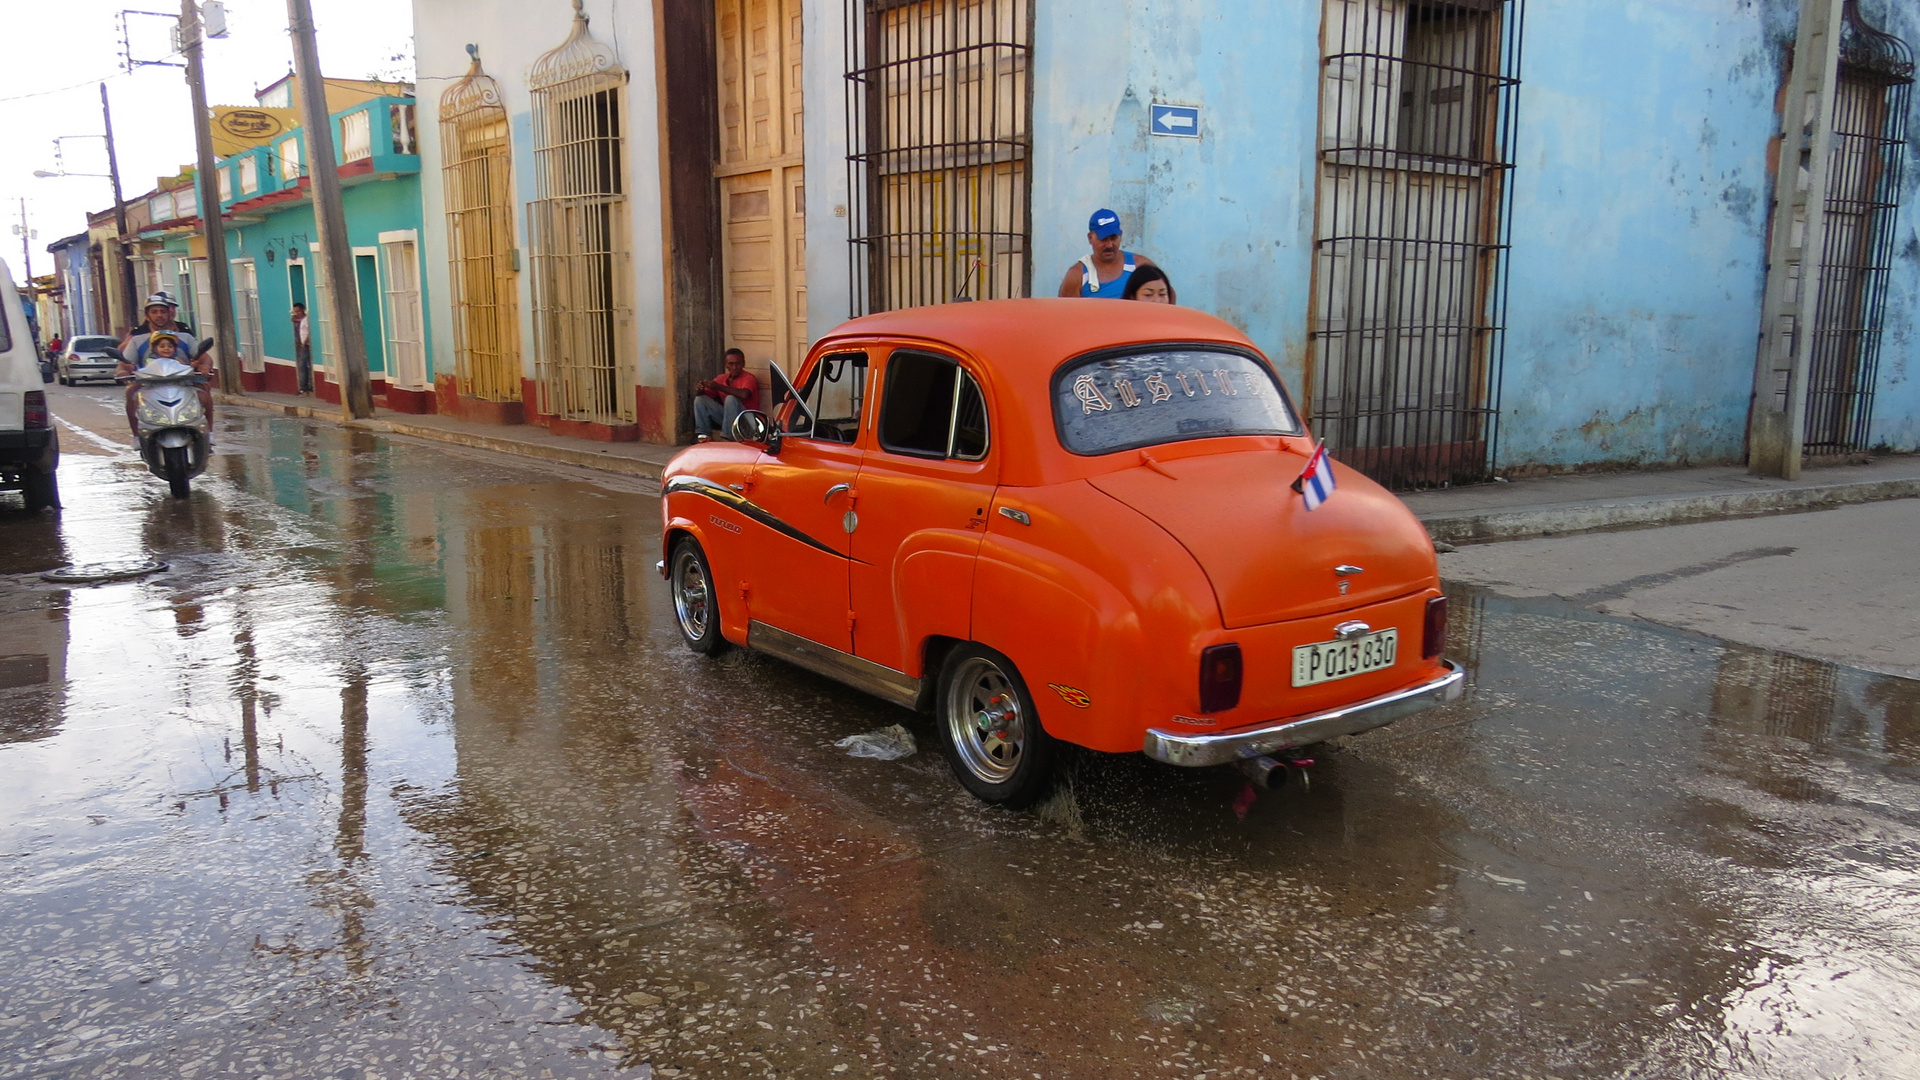 Kleiner Oldtimer in Havanna